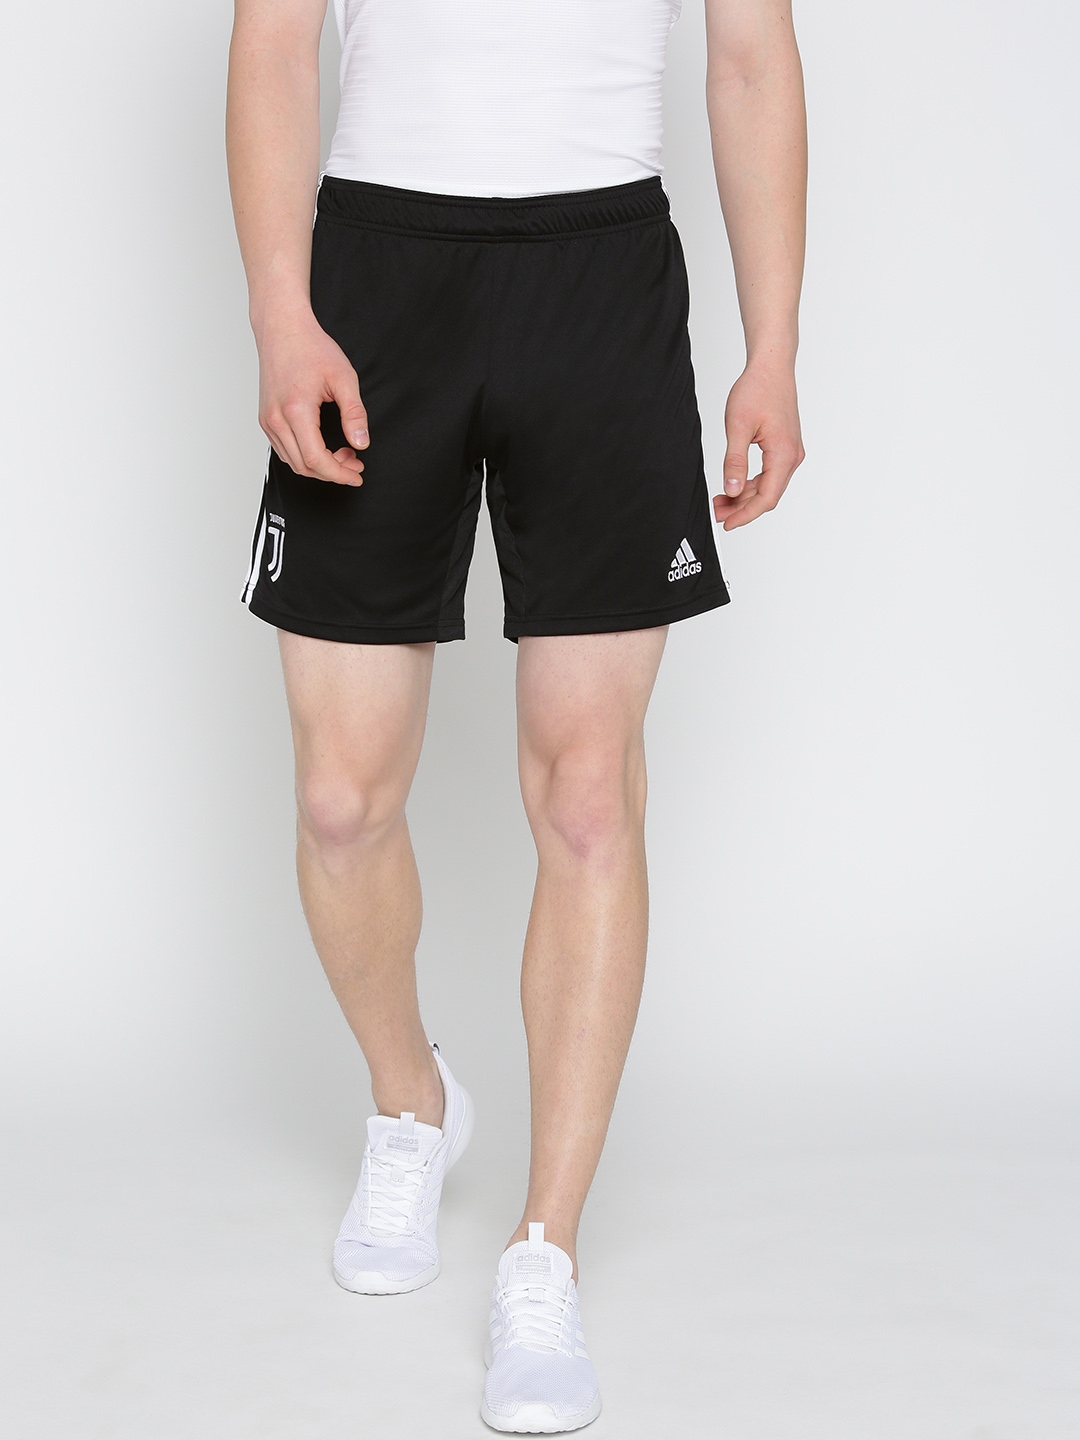 juventus shorts adidas